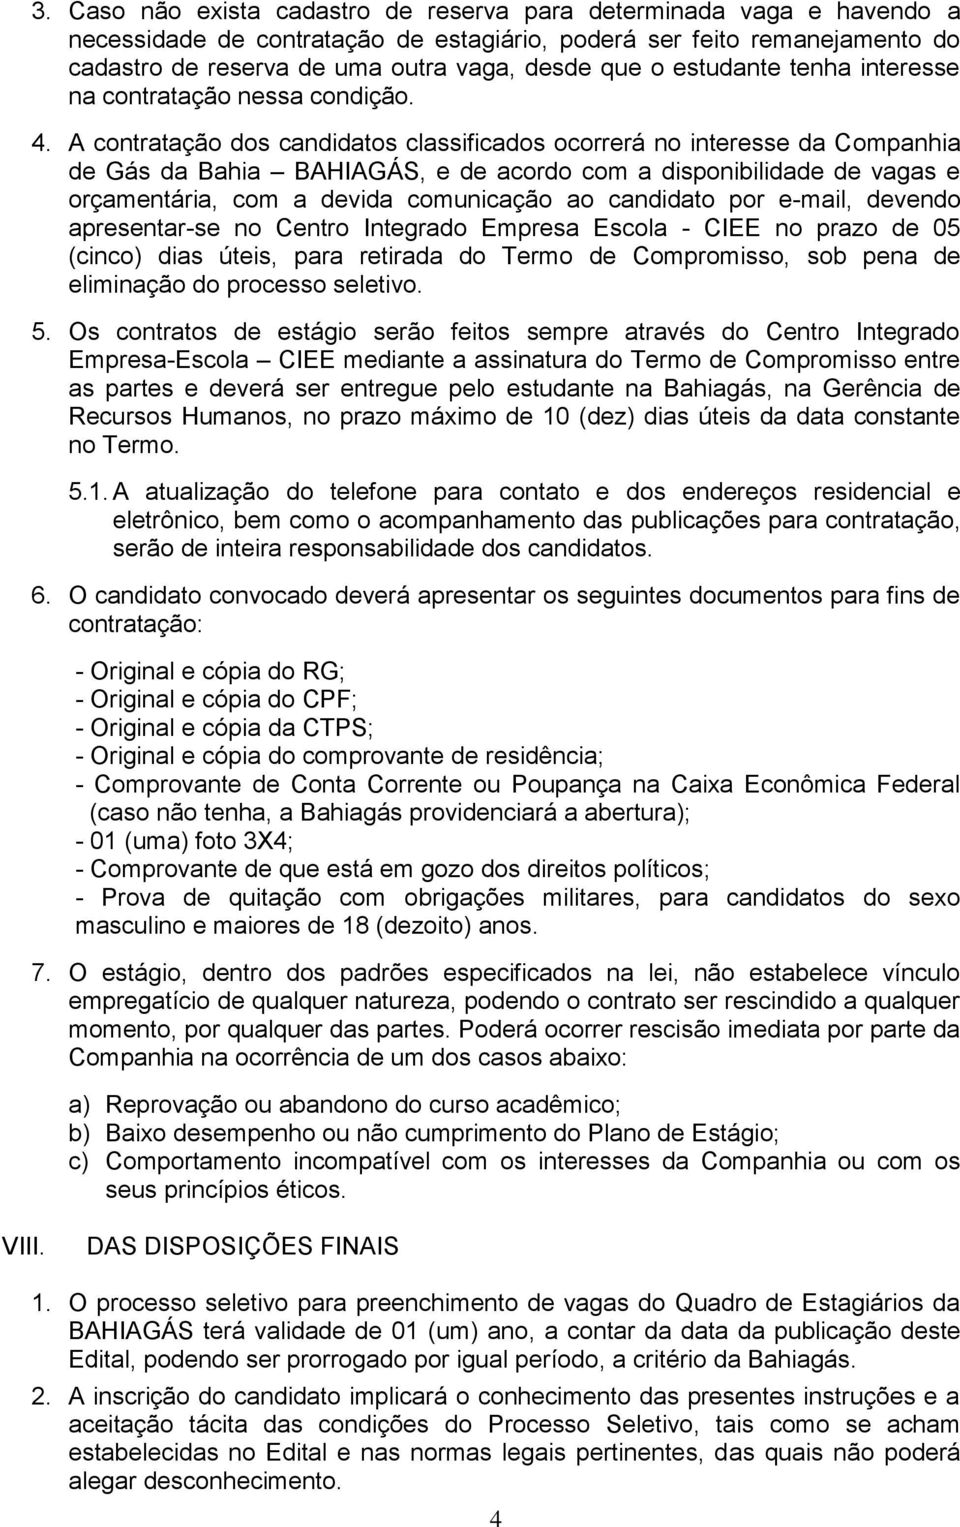 A contratação dos candidatos classificados ocorrerá no interesse da Companhia de Gás da Bahia BAHIAGÁS, e de acordo com a disponibilidade de vagas e orçamentária, com a devida comunicação ao